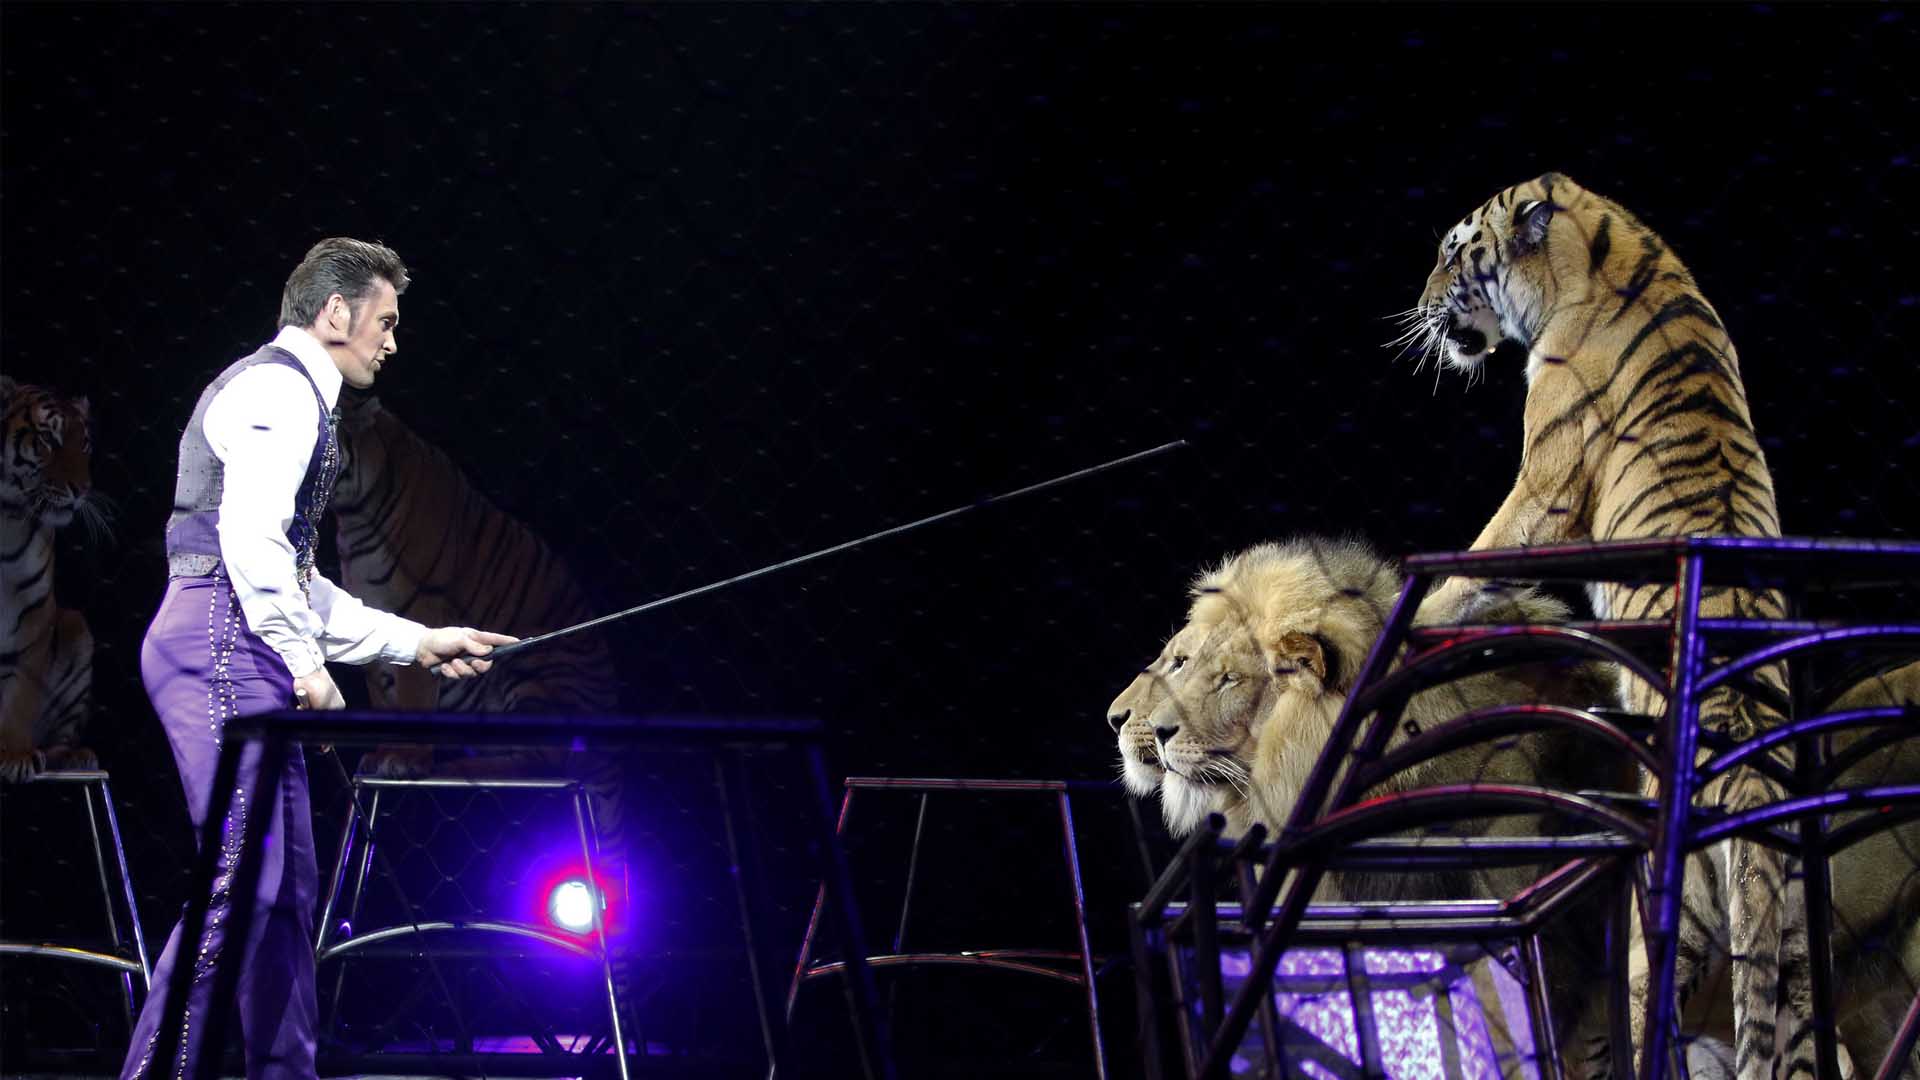 Madrid prohíbe los circos con animales salvajes